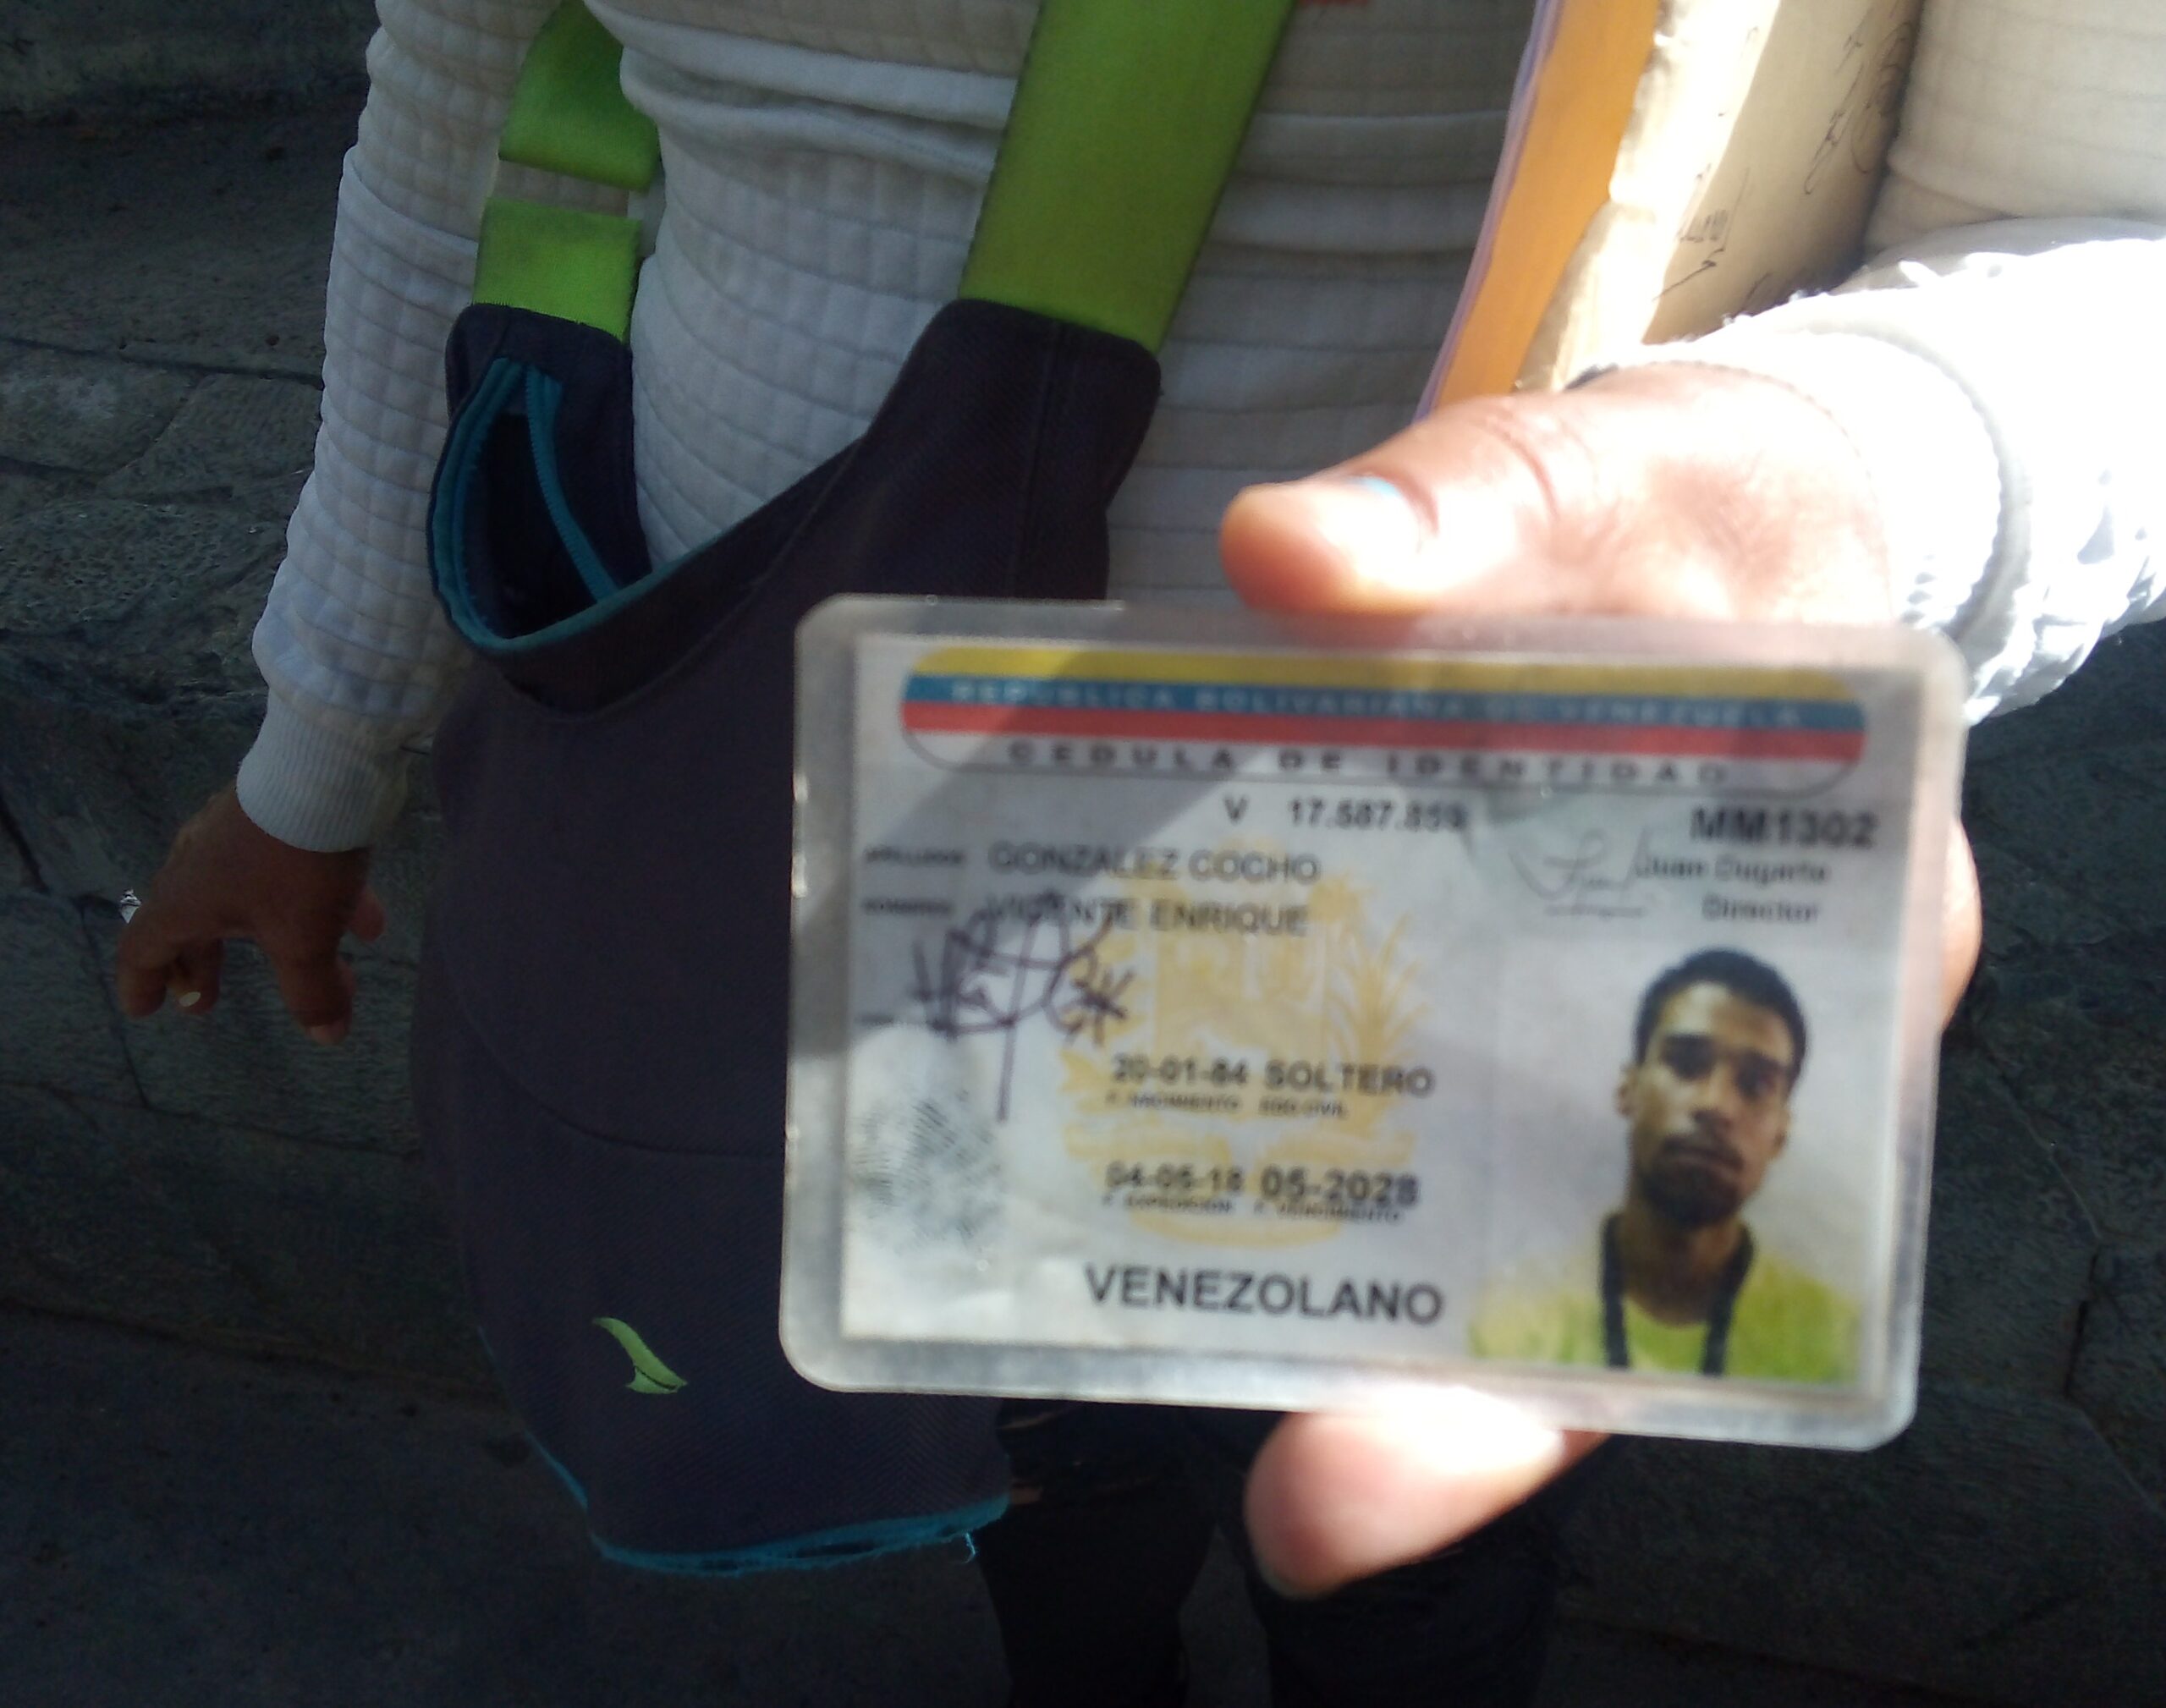 Crueldad pasional: lo golpearon y arrastraron por unas escaleras hasta matarlo en Caracas